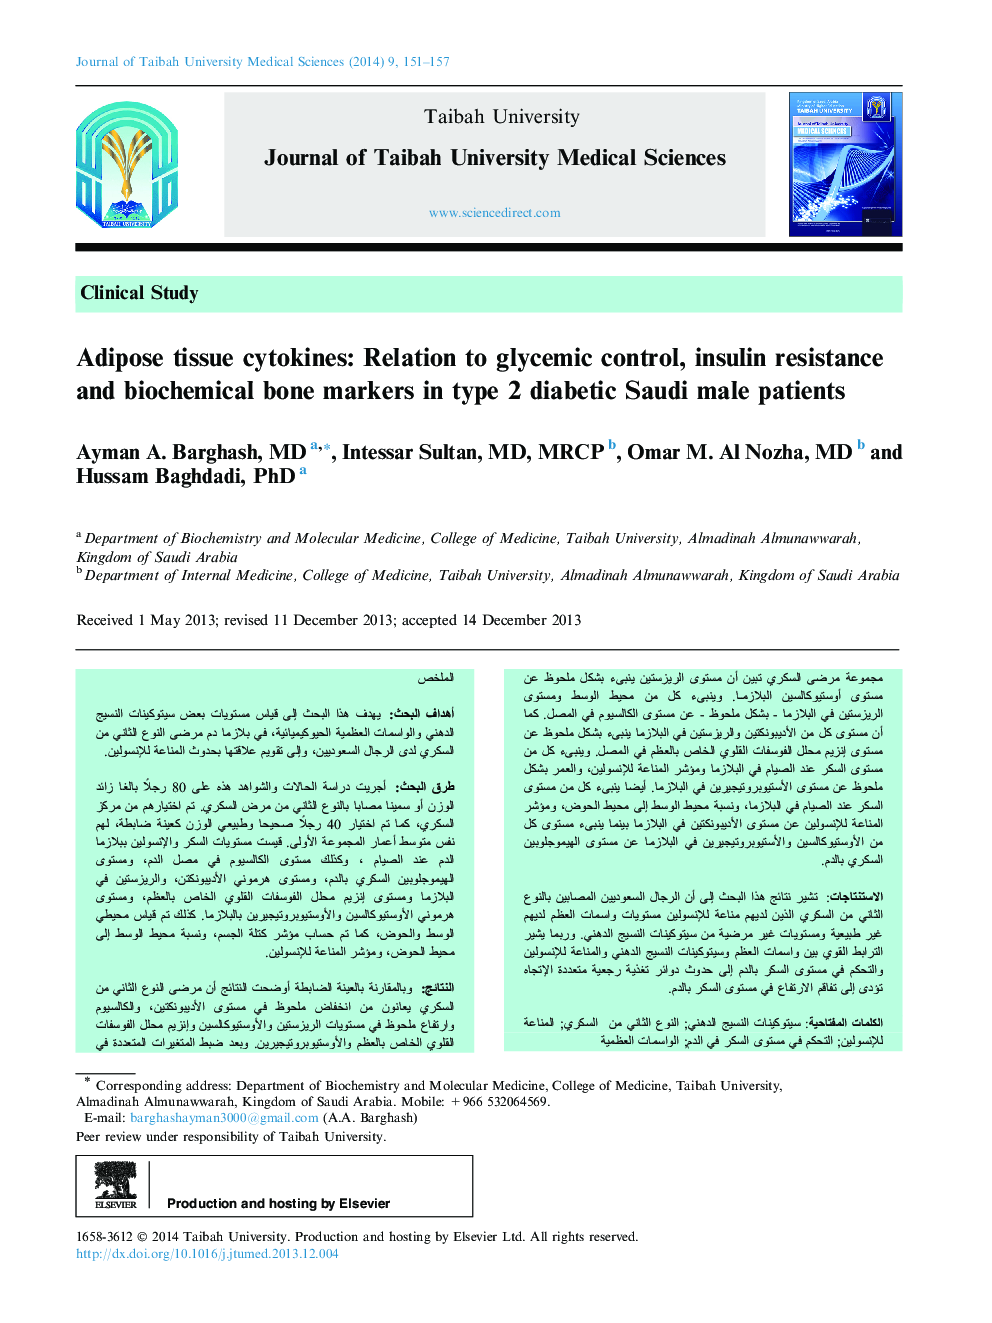 سیتوکین های بافت چربی: ارتباط با کنترل گلیسمی، مقاومت به انسولین و نشانگرهای بیوشیمیایی استخوان در بیماران دیابتی نوع 2 عربستان سعودی 